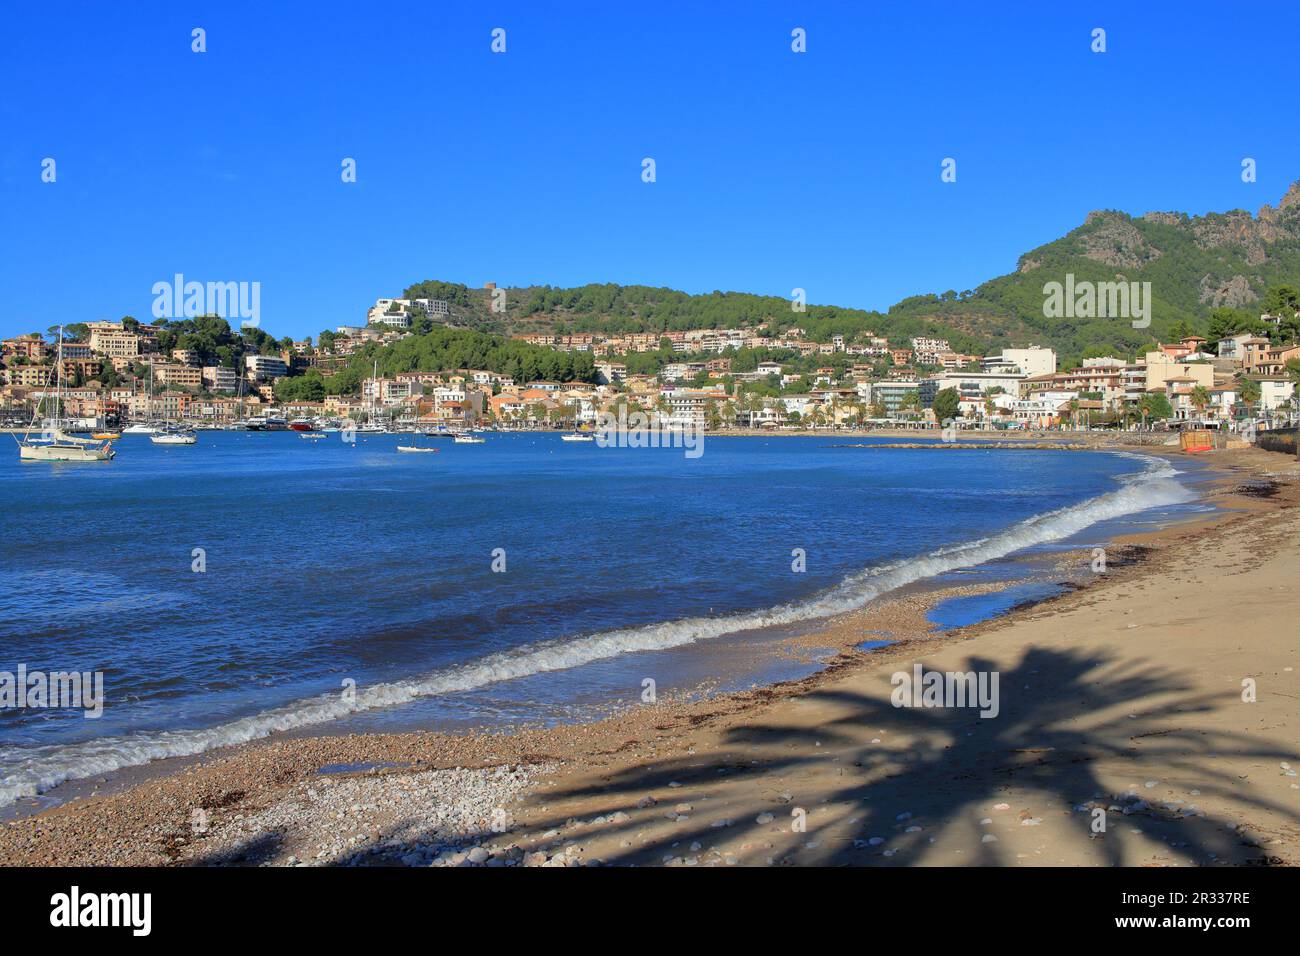 La foto mostra la spiaggia di una località turistica sull'isola di Palma di Maiorca in bassa stagione. Foto Stock